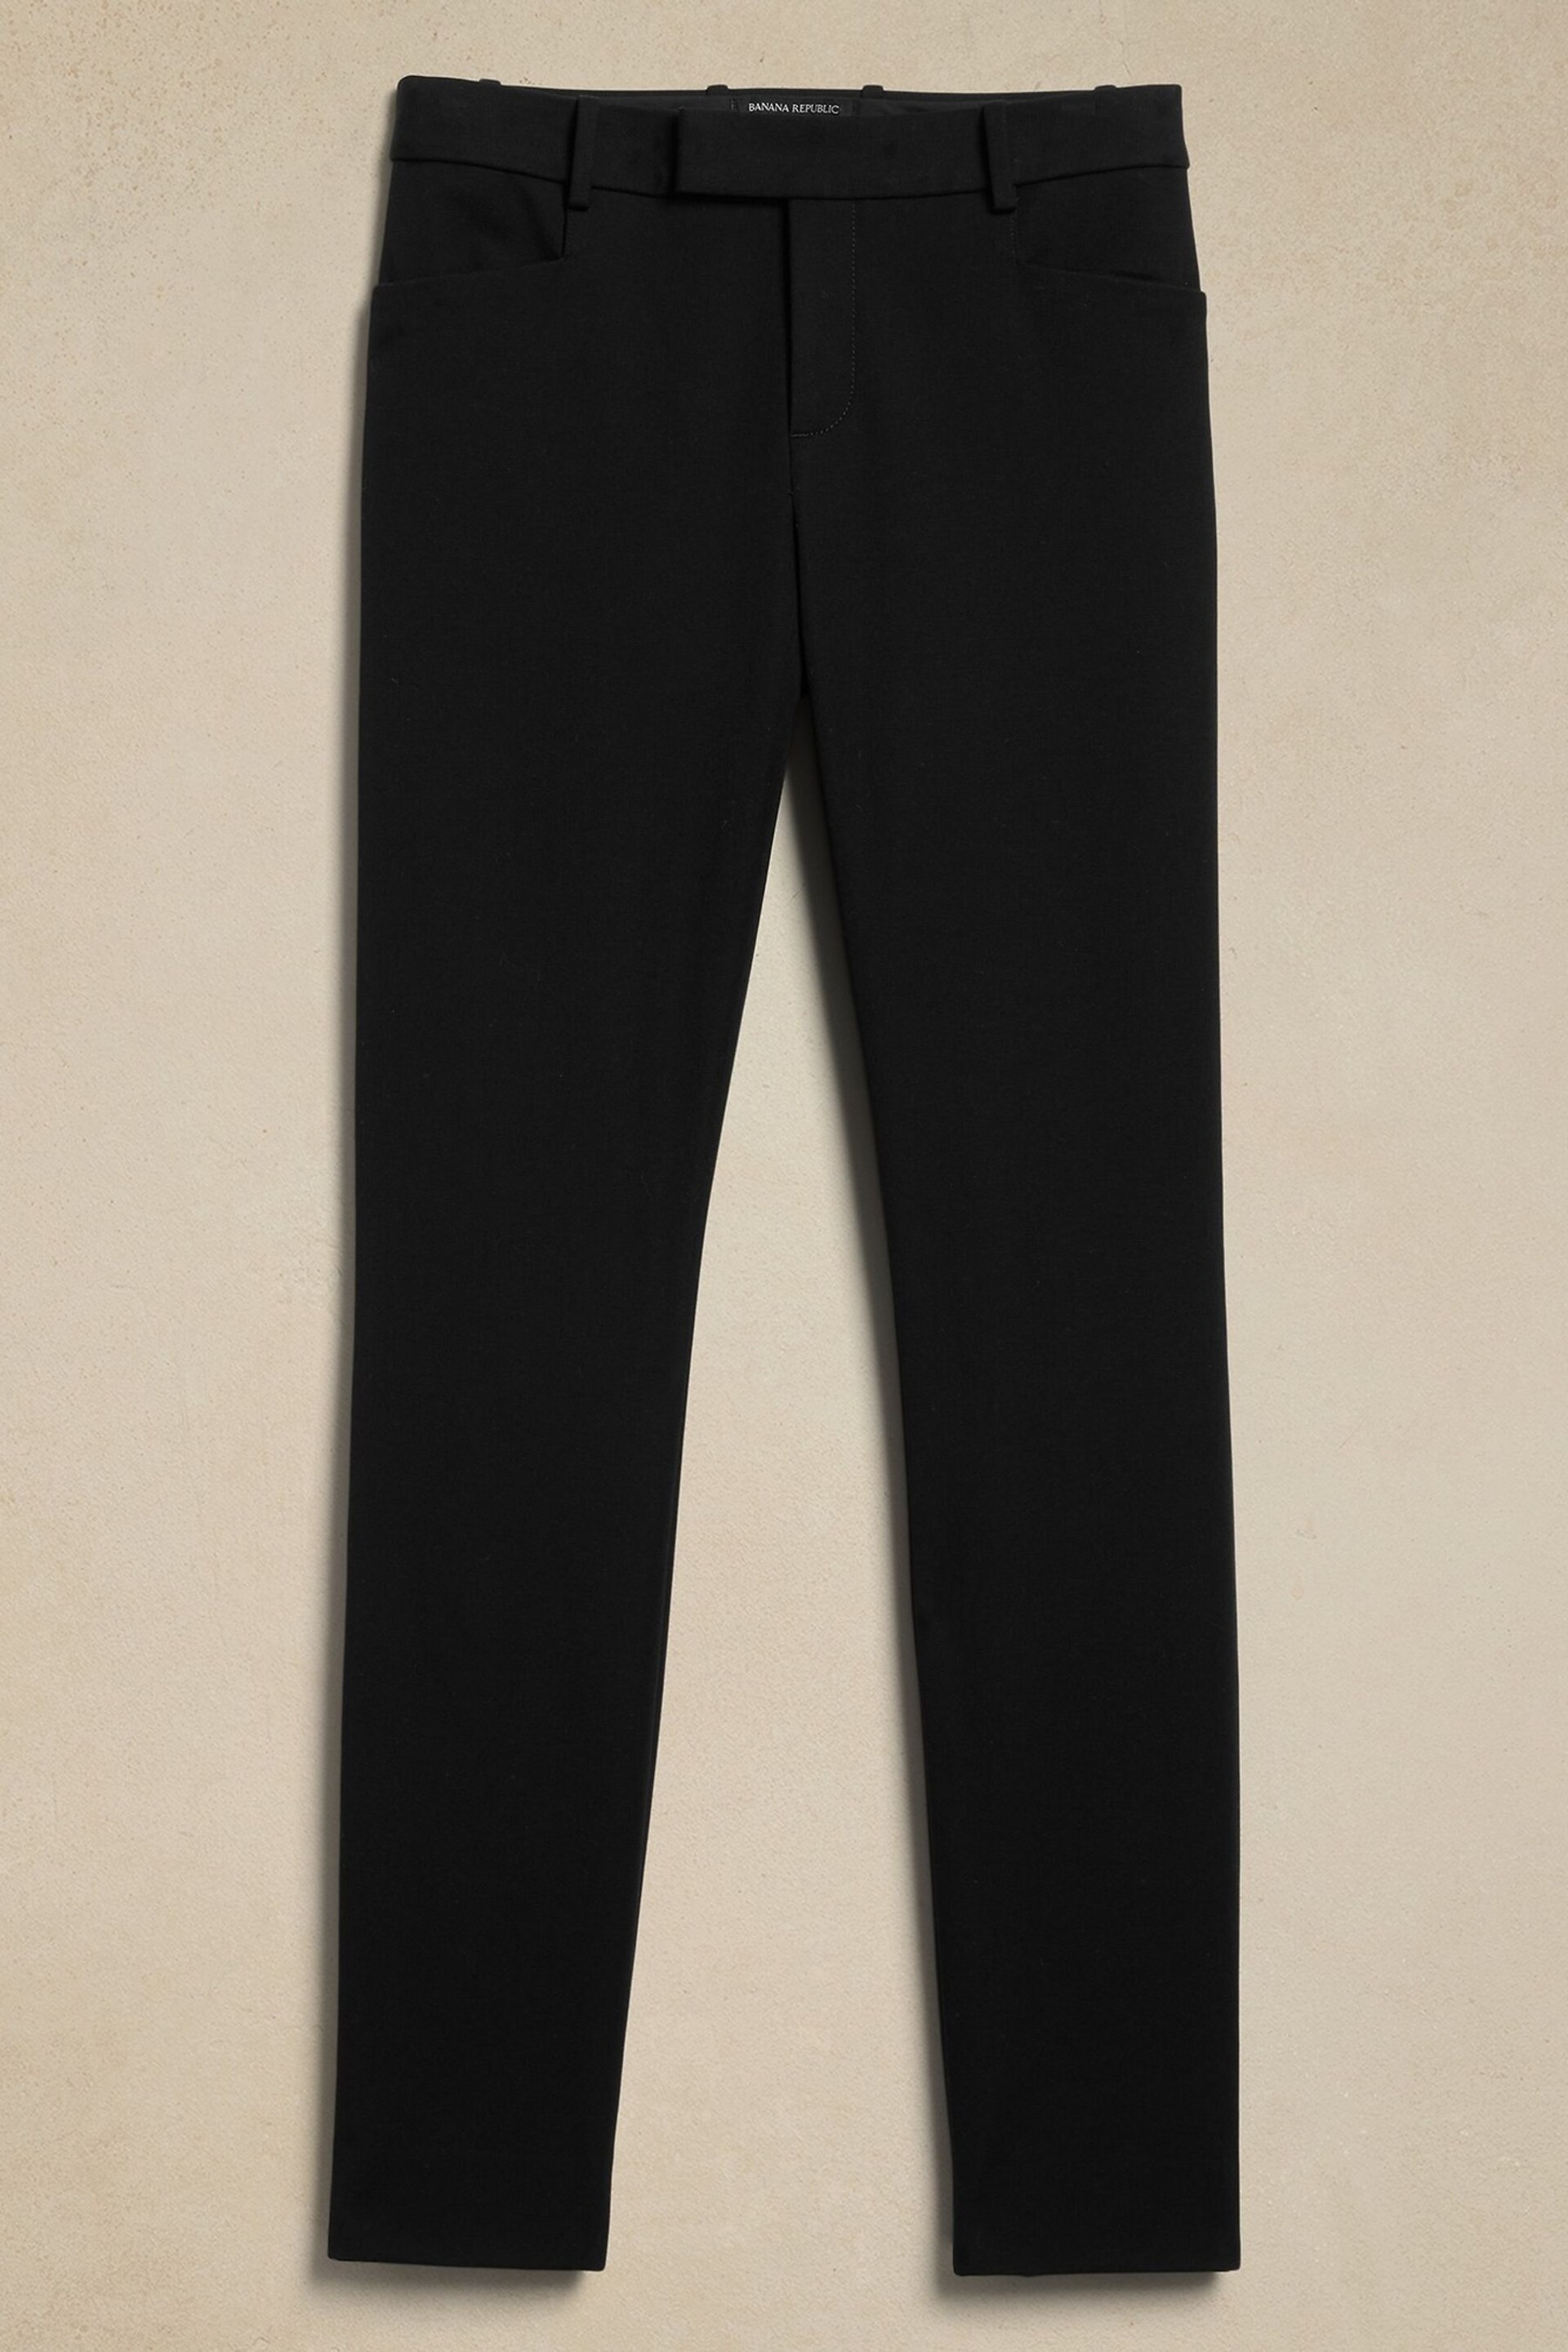 Banana Republic Black Skinny Sloan Trousers - Image 4 of 4